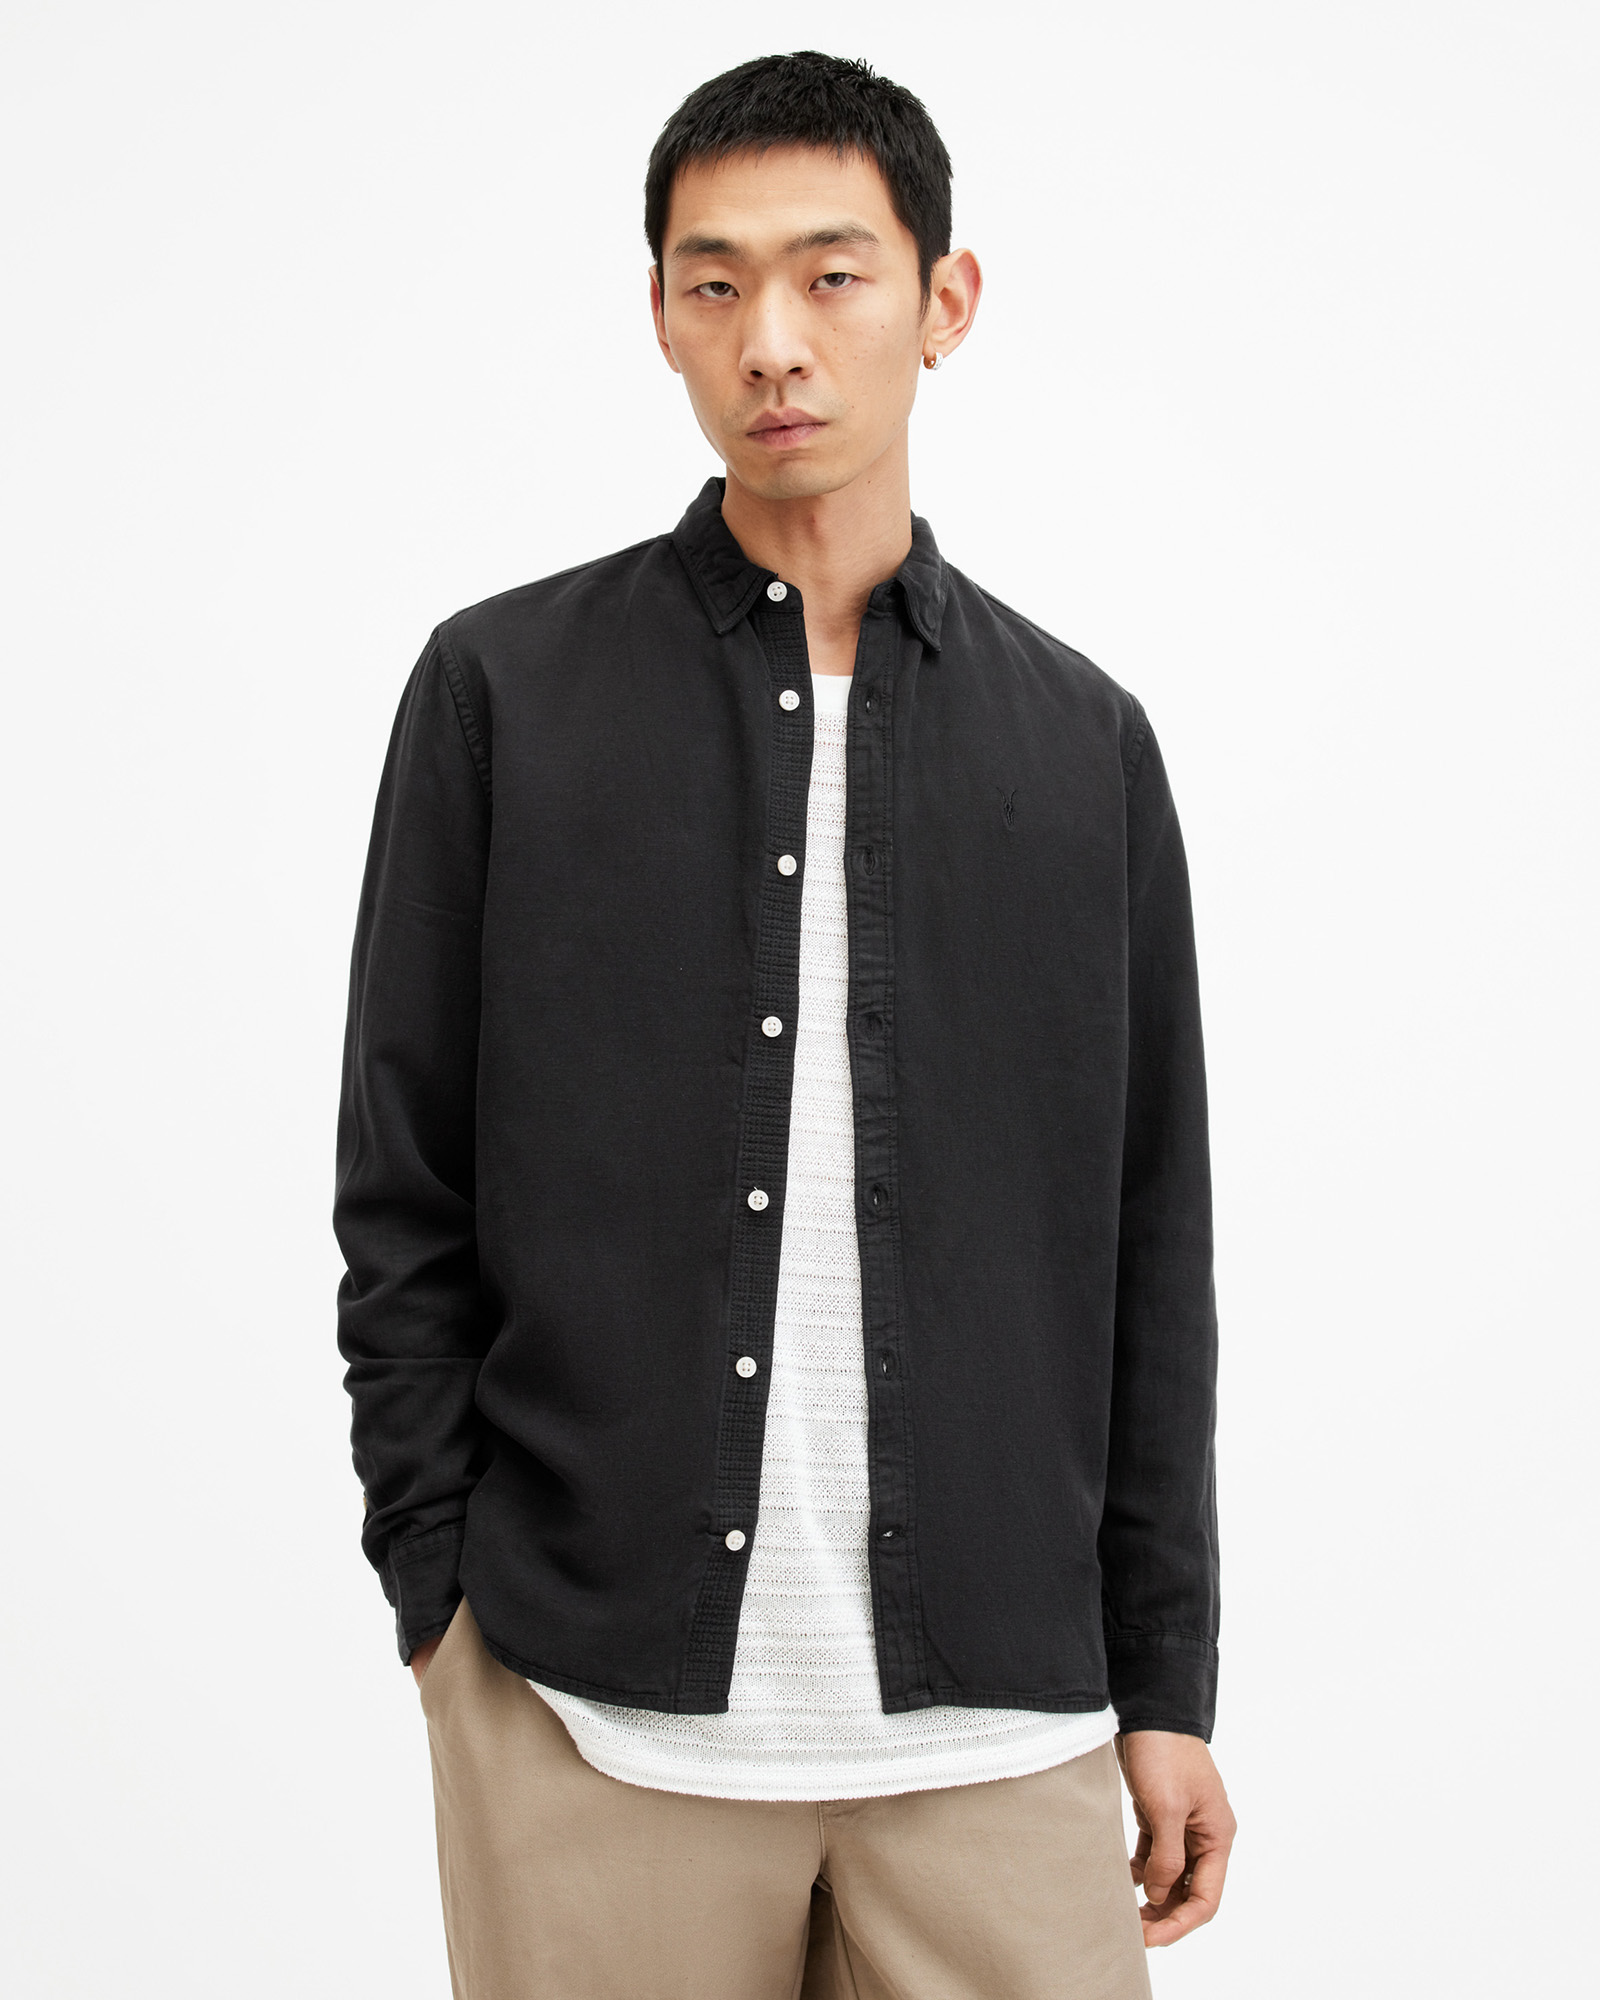 AllSaints Laguna Linen Blend Relaxed Fit Shirt,, Size: